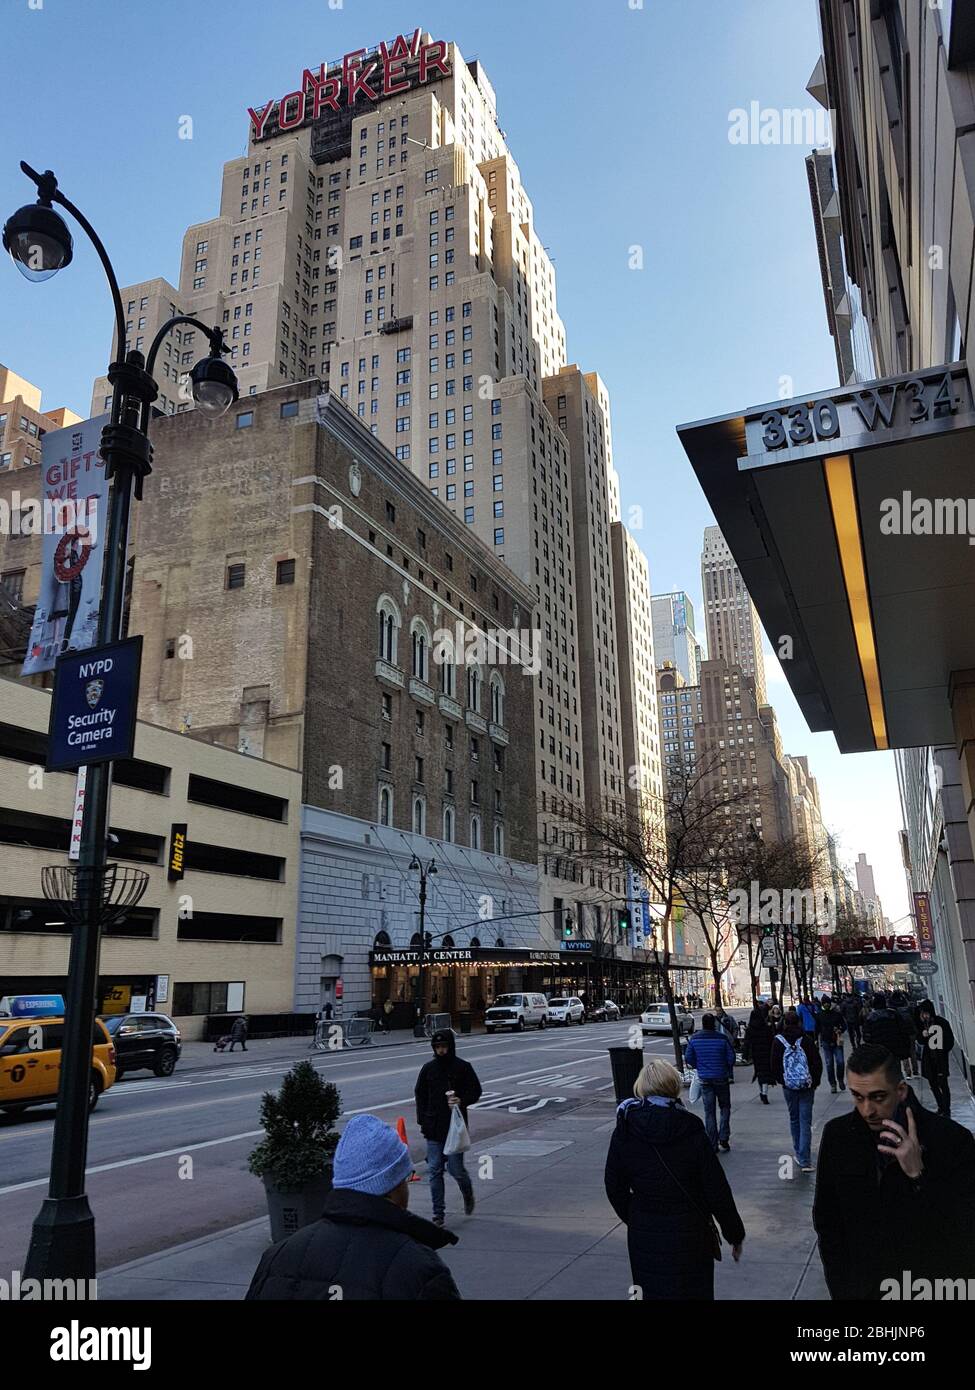 New York, NY/USA - Dicembre 2017: Il Wyndham New Yorker Hotel sulla 34th Street West. Questo hotel in stile Art Déco si trova nel quartiere Hell's Kitchen Foto Stock